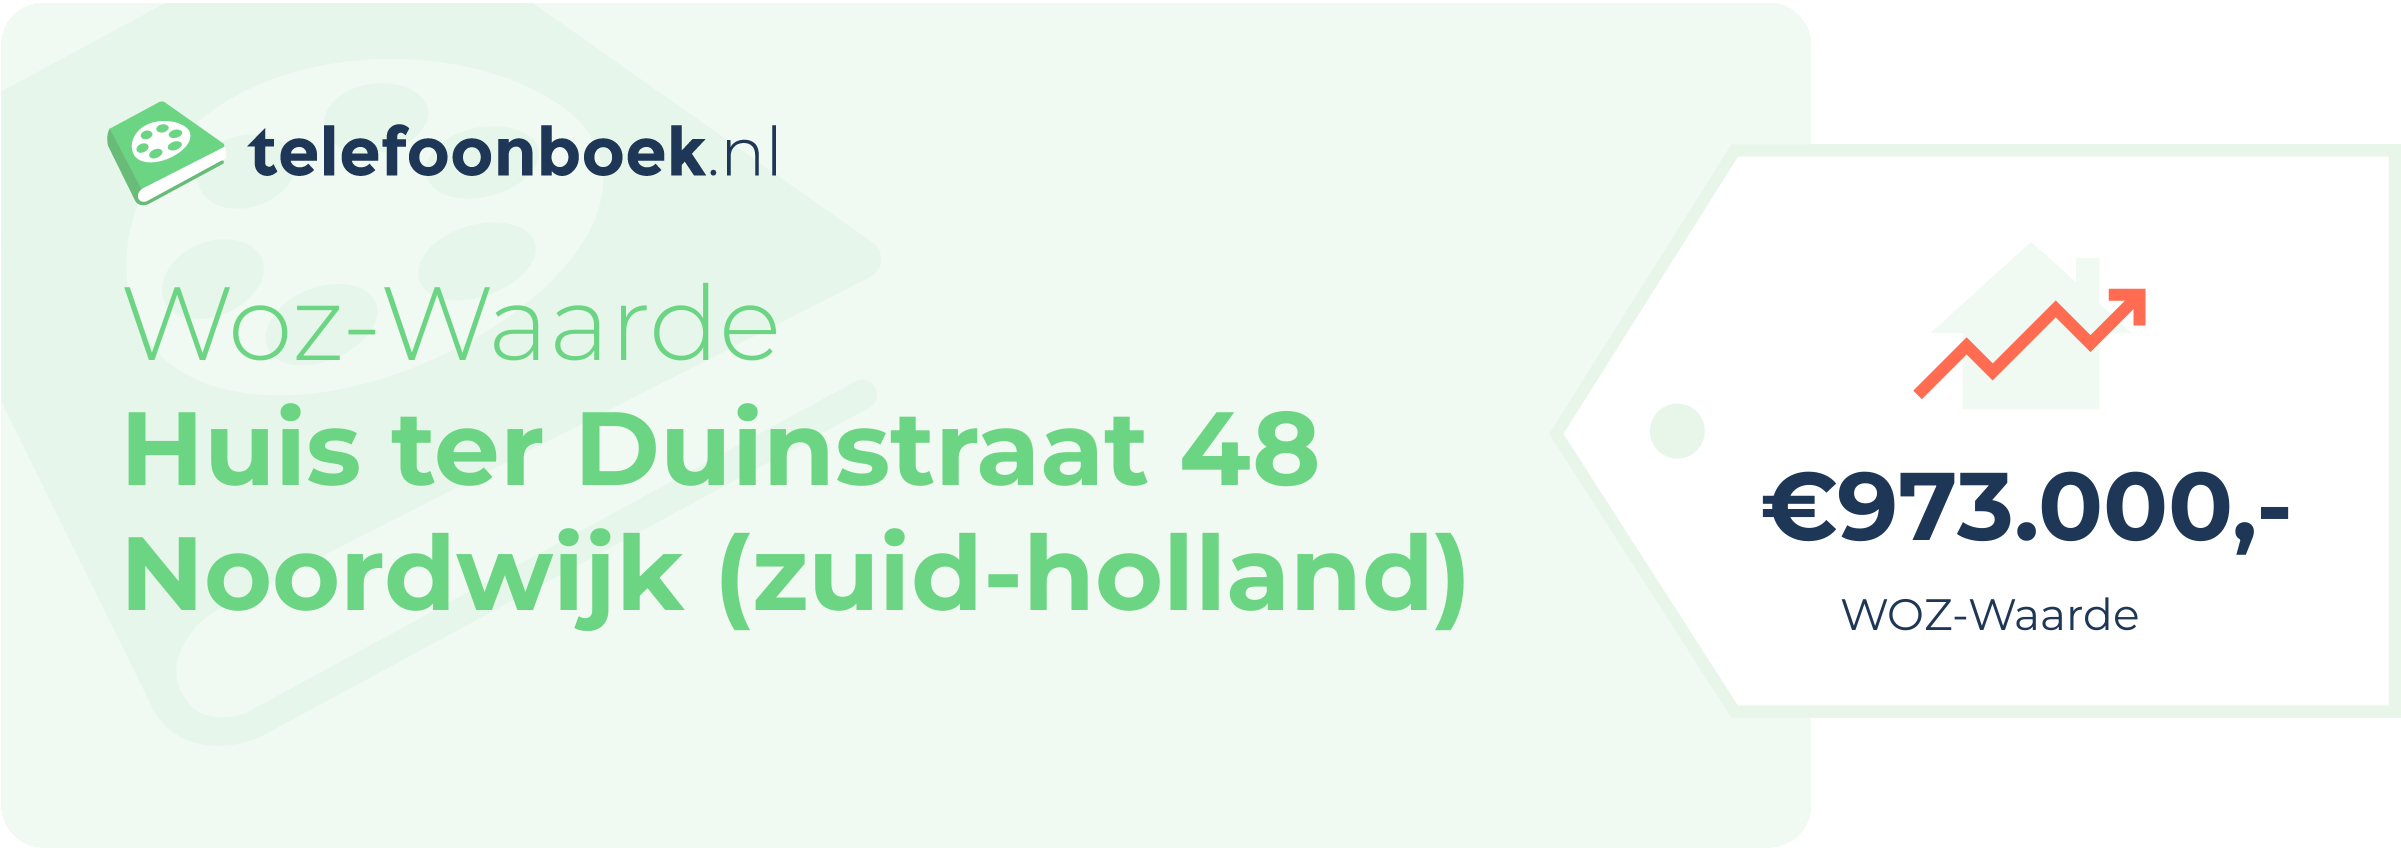 WOZ-waarde Huis Ter Duinstraat 48 Noordwijk (Zuid-Holland)